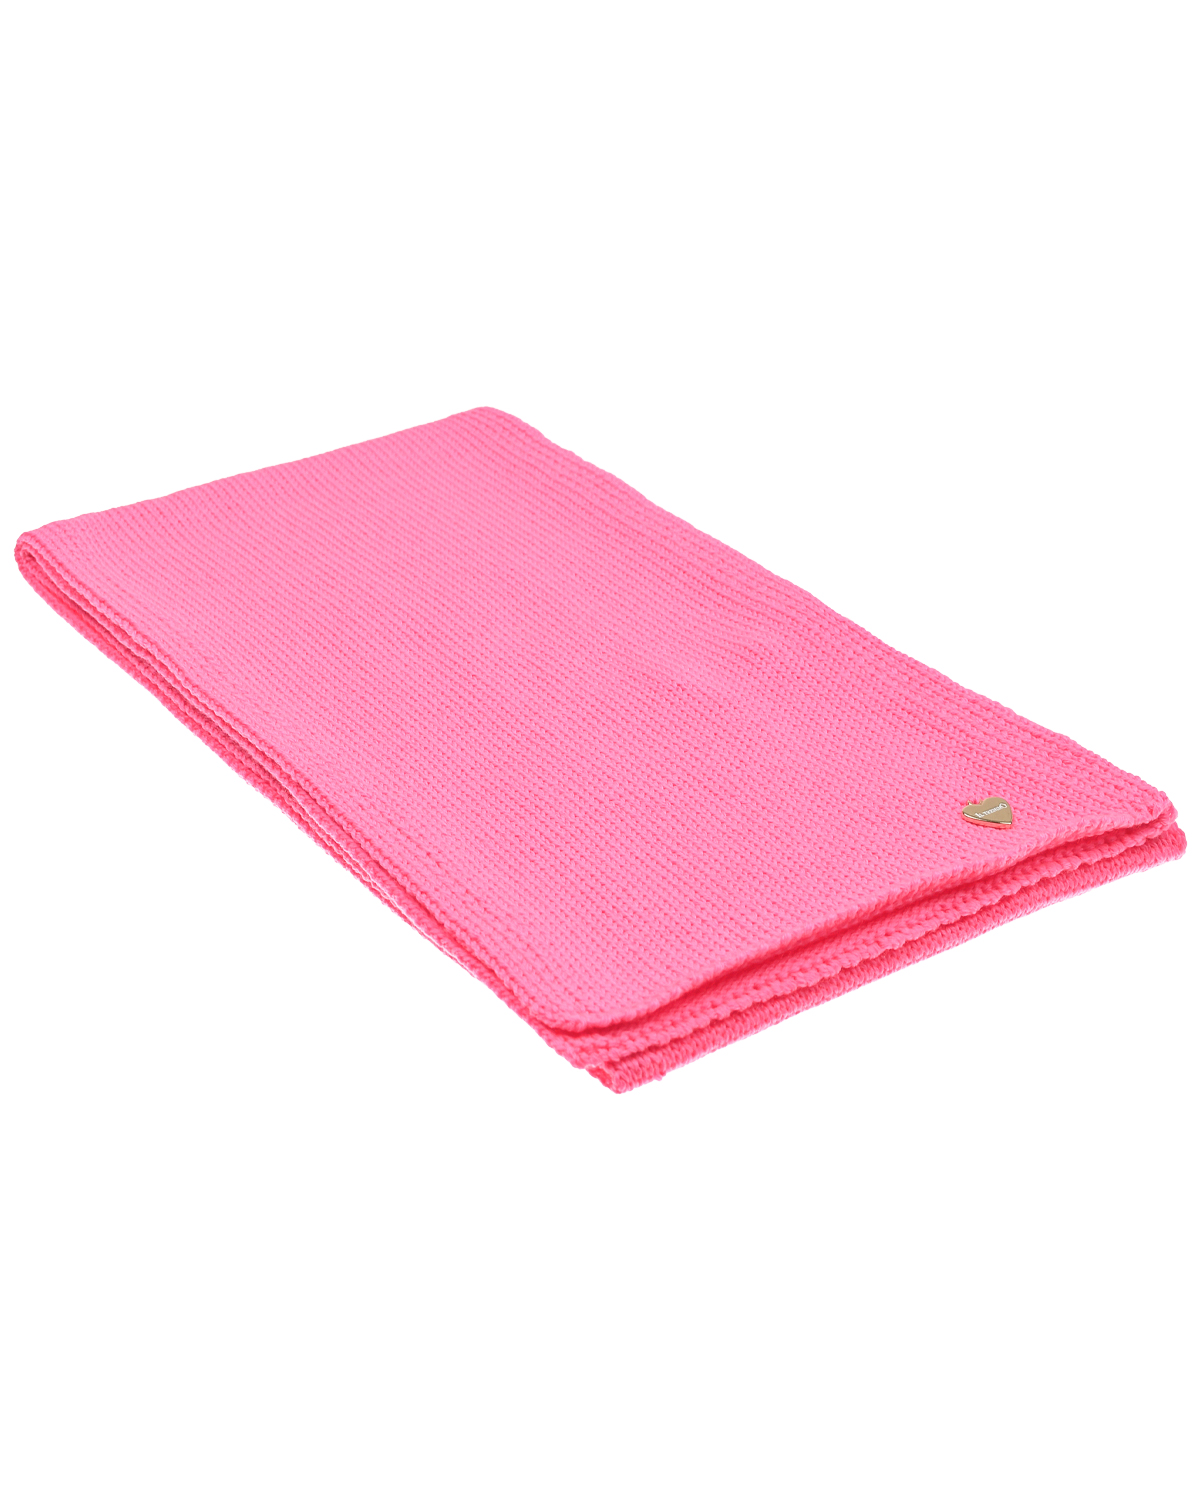 Розовый шарф, 140x19 см Il Trenino детский, размер unica